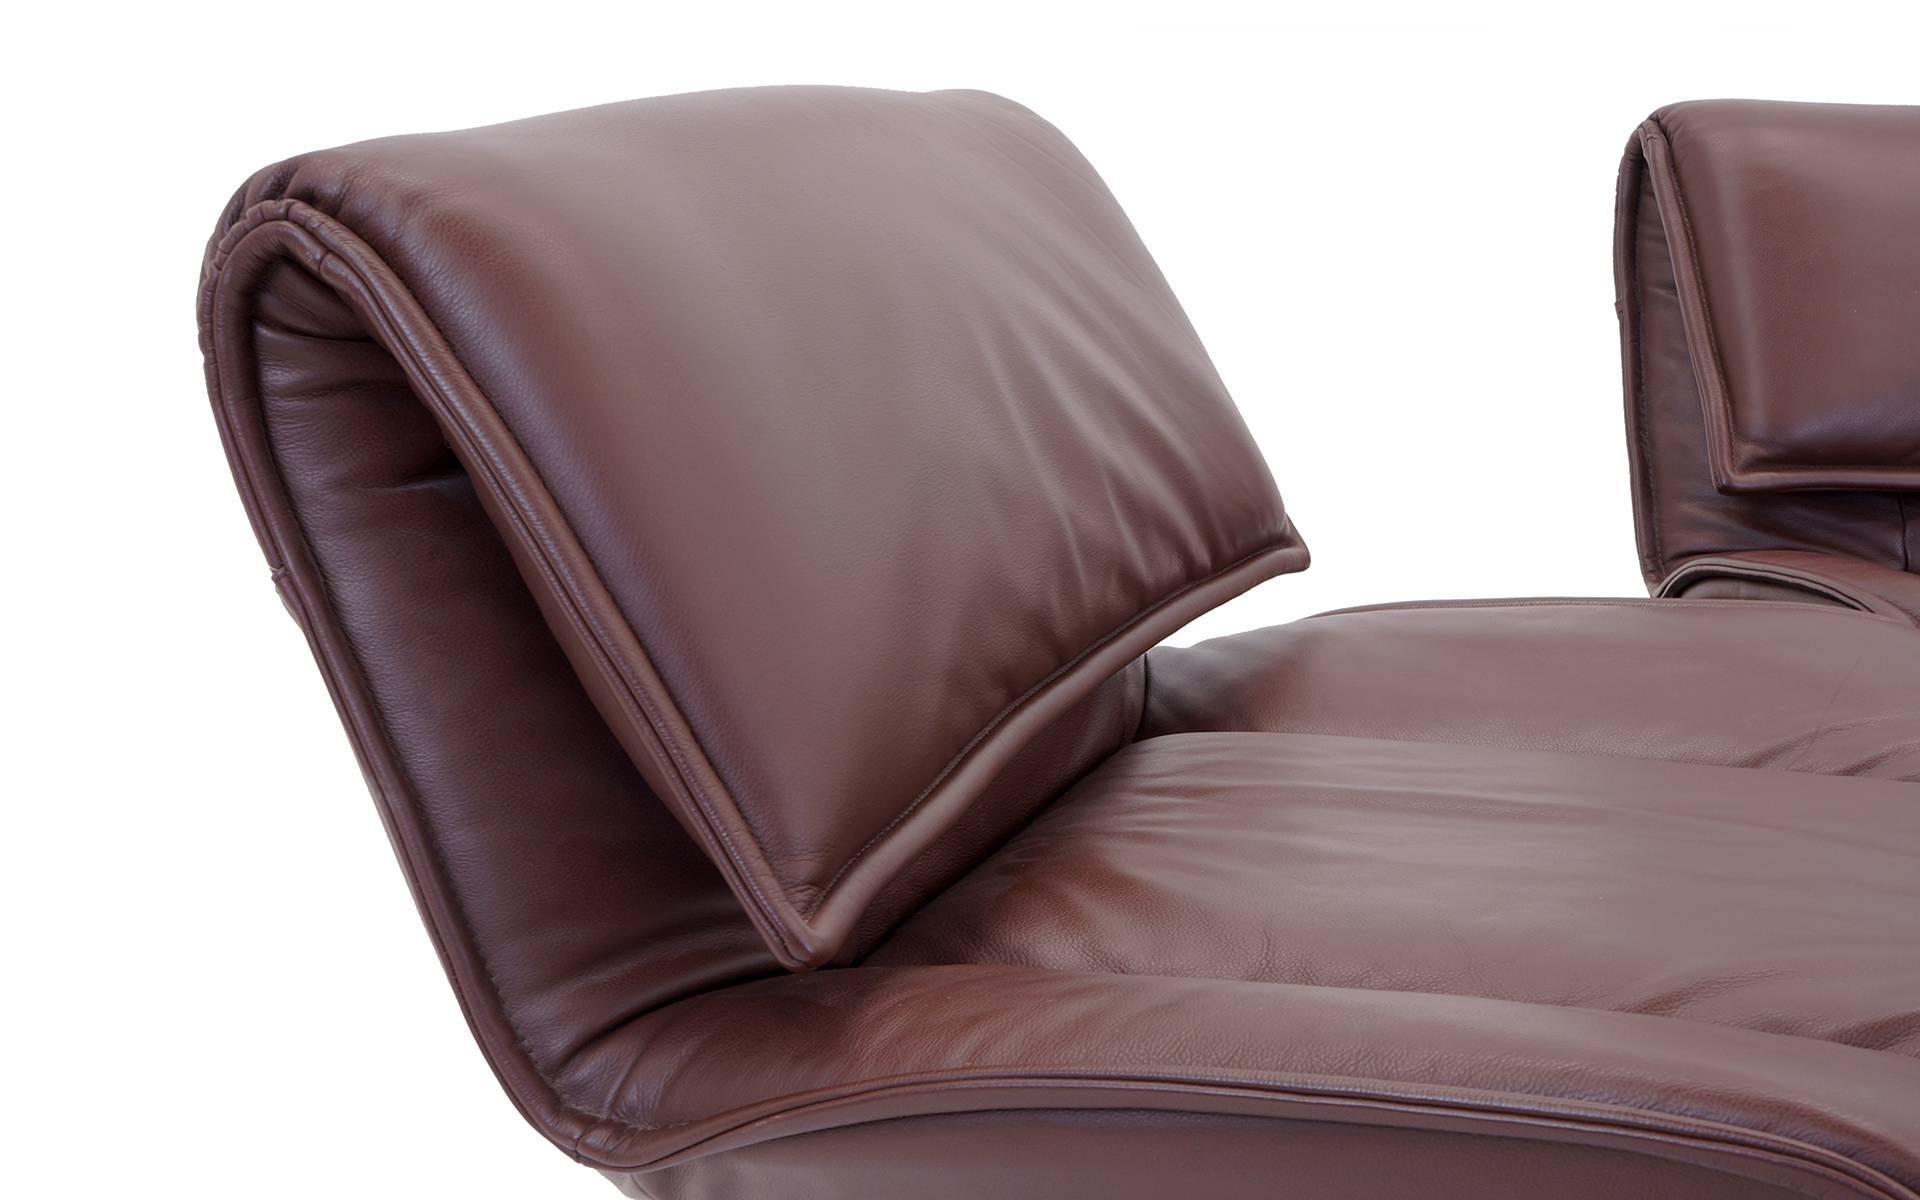 Lacquered Vico Magistretti for Cassina Veranda Three Seat Modular Sofa in Brown Leather